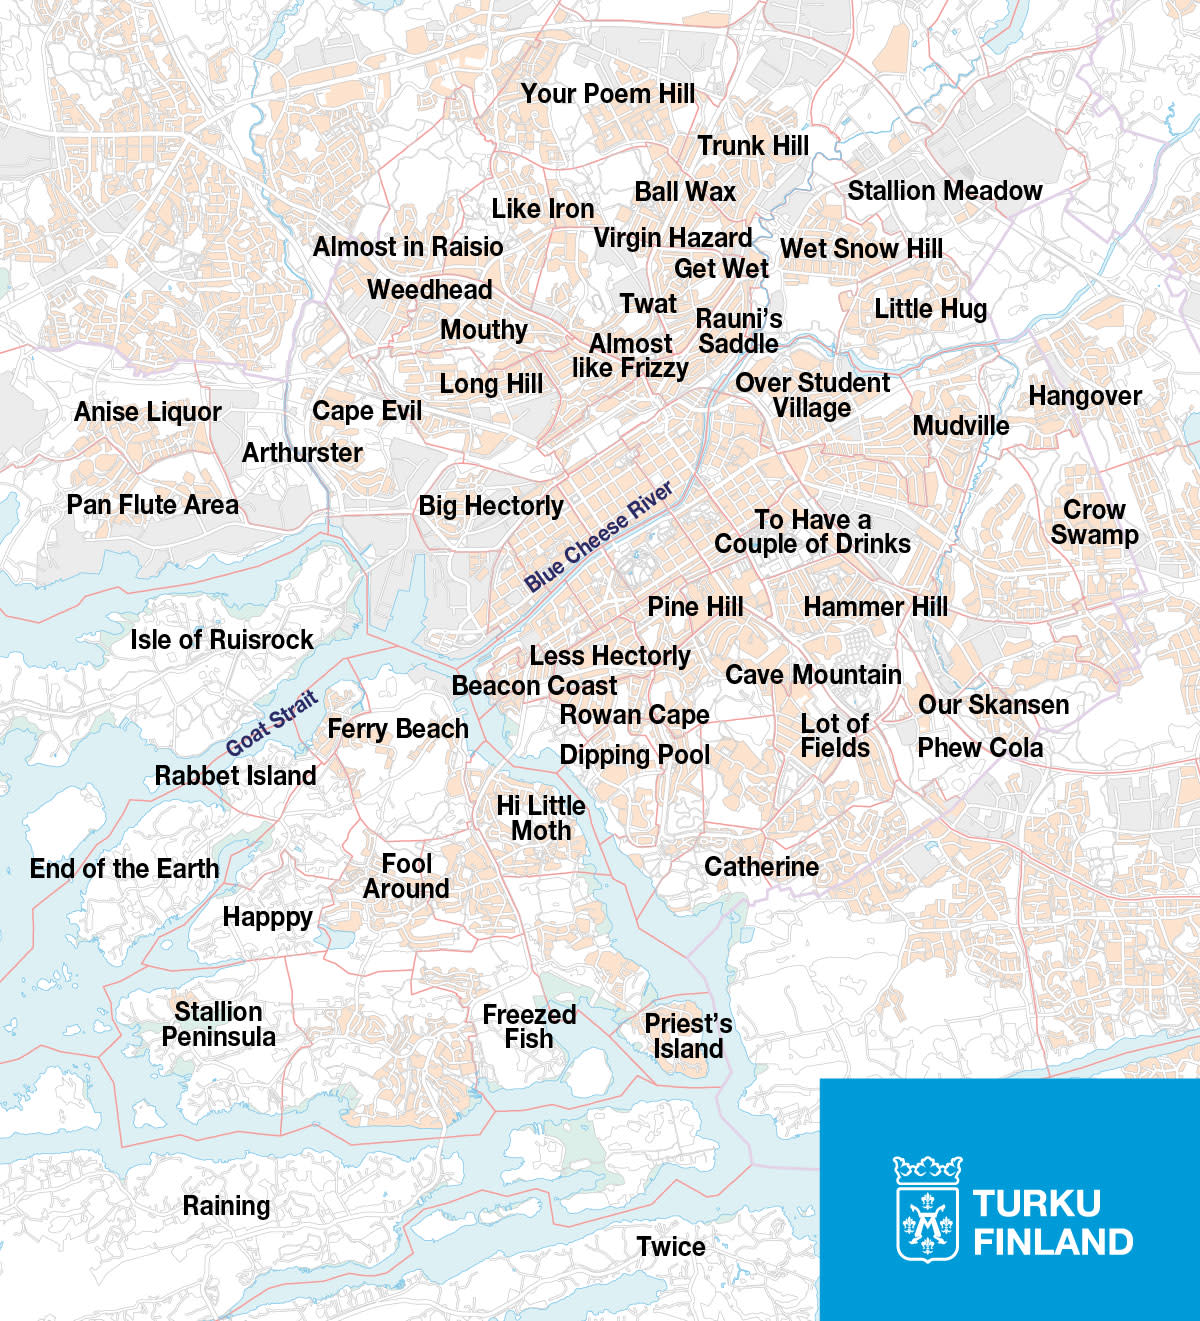 Gefrorener Fisch, Gebiet der Panflöte: Turku veröffentlicht eine Karte mit Ortsnamen in englischer Sprache